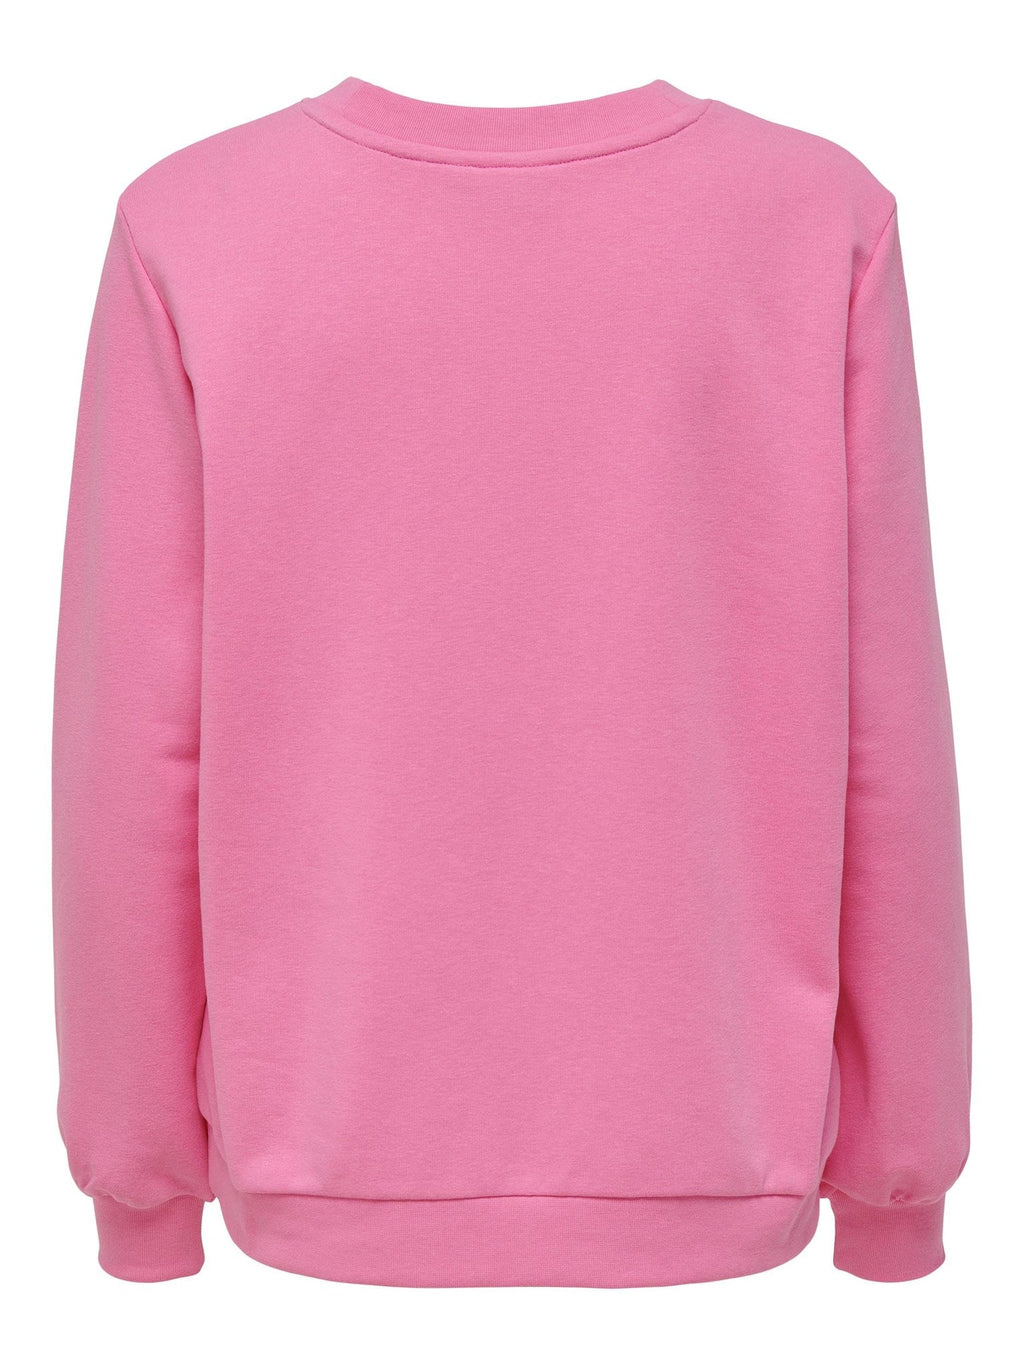 Spalvotas megztinis - rožinis